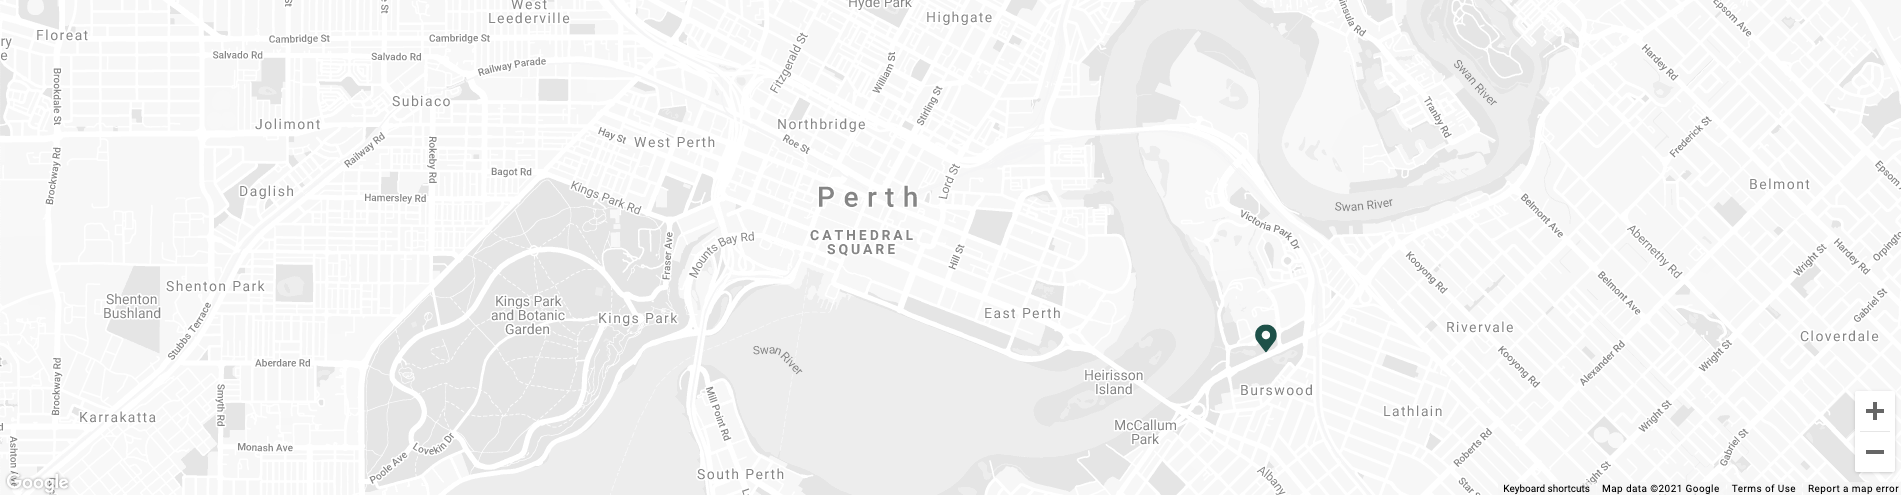 Map image of Crown Promenade Perth